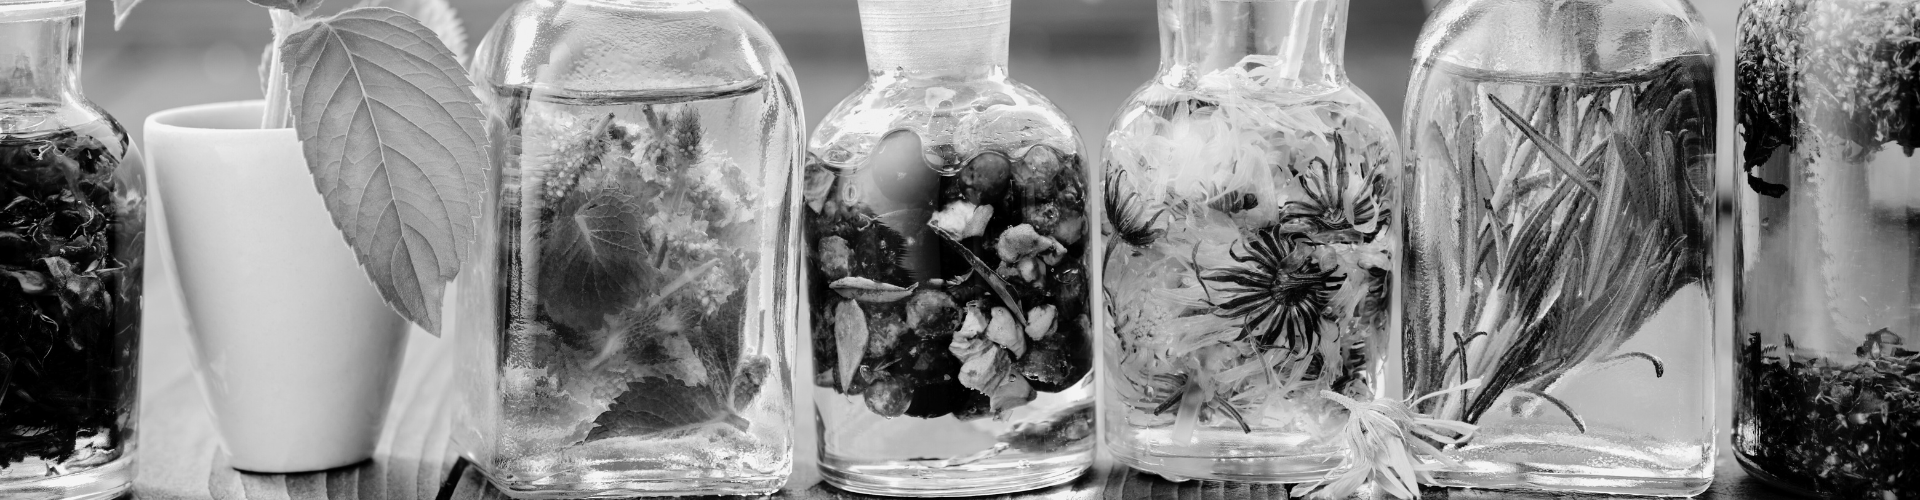 Verschillende glazen flesjes met planten in vloeistof